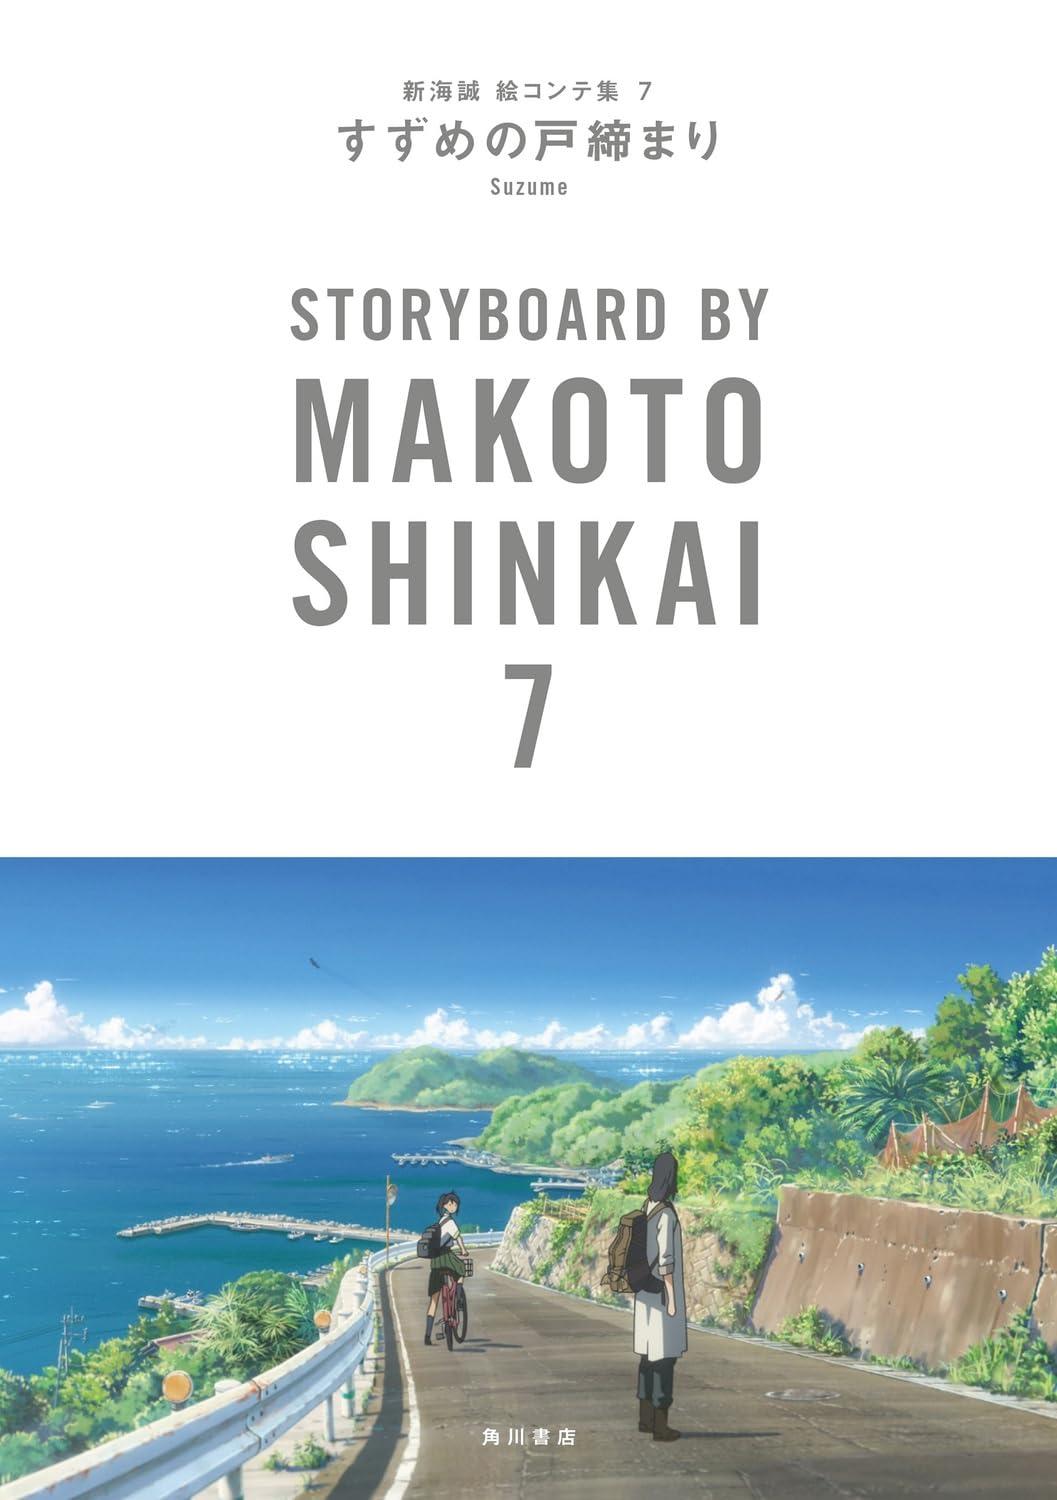 Suzume No Tojimari: Storyboards By Makoto Shinkai 7 (Japanese Edition)